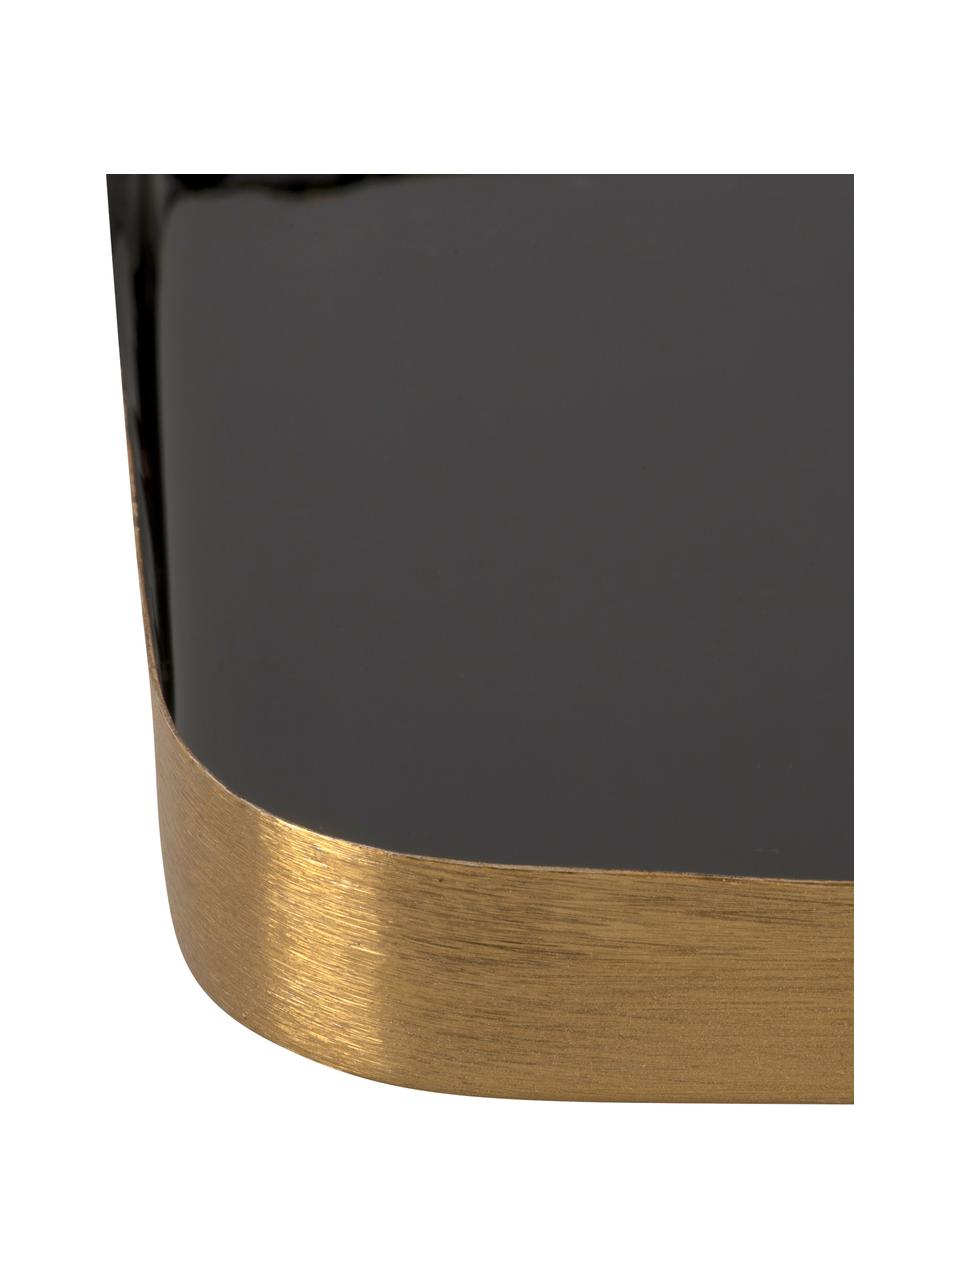 Deko-Tablett Festive mit glänzender Oberfläche in Schwarz, Metall, beschichtet, Schwarz, Goldfarben, L 25 x B 13 cm